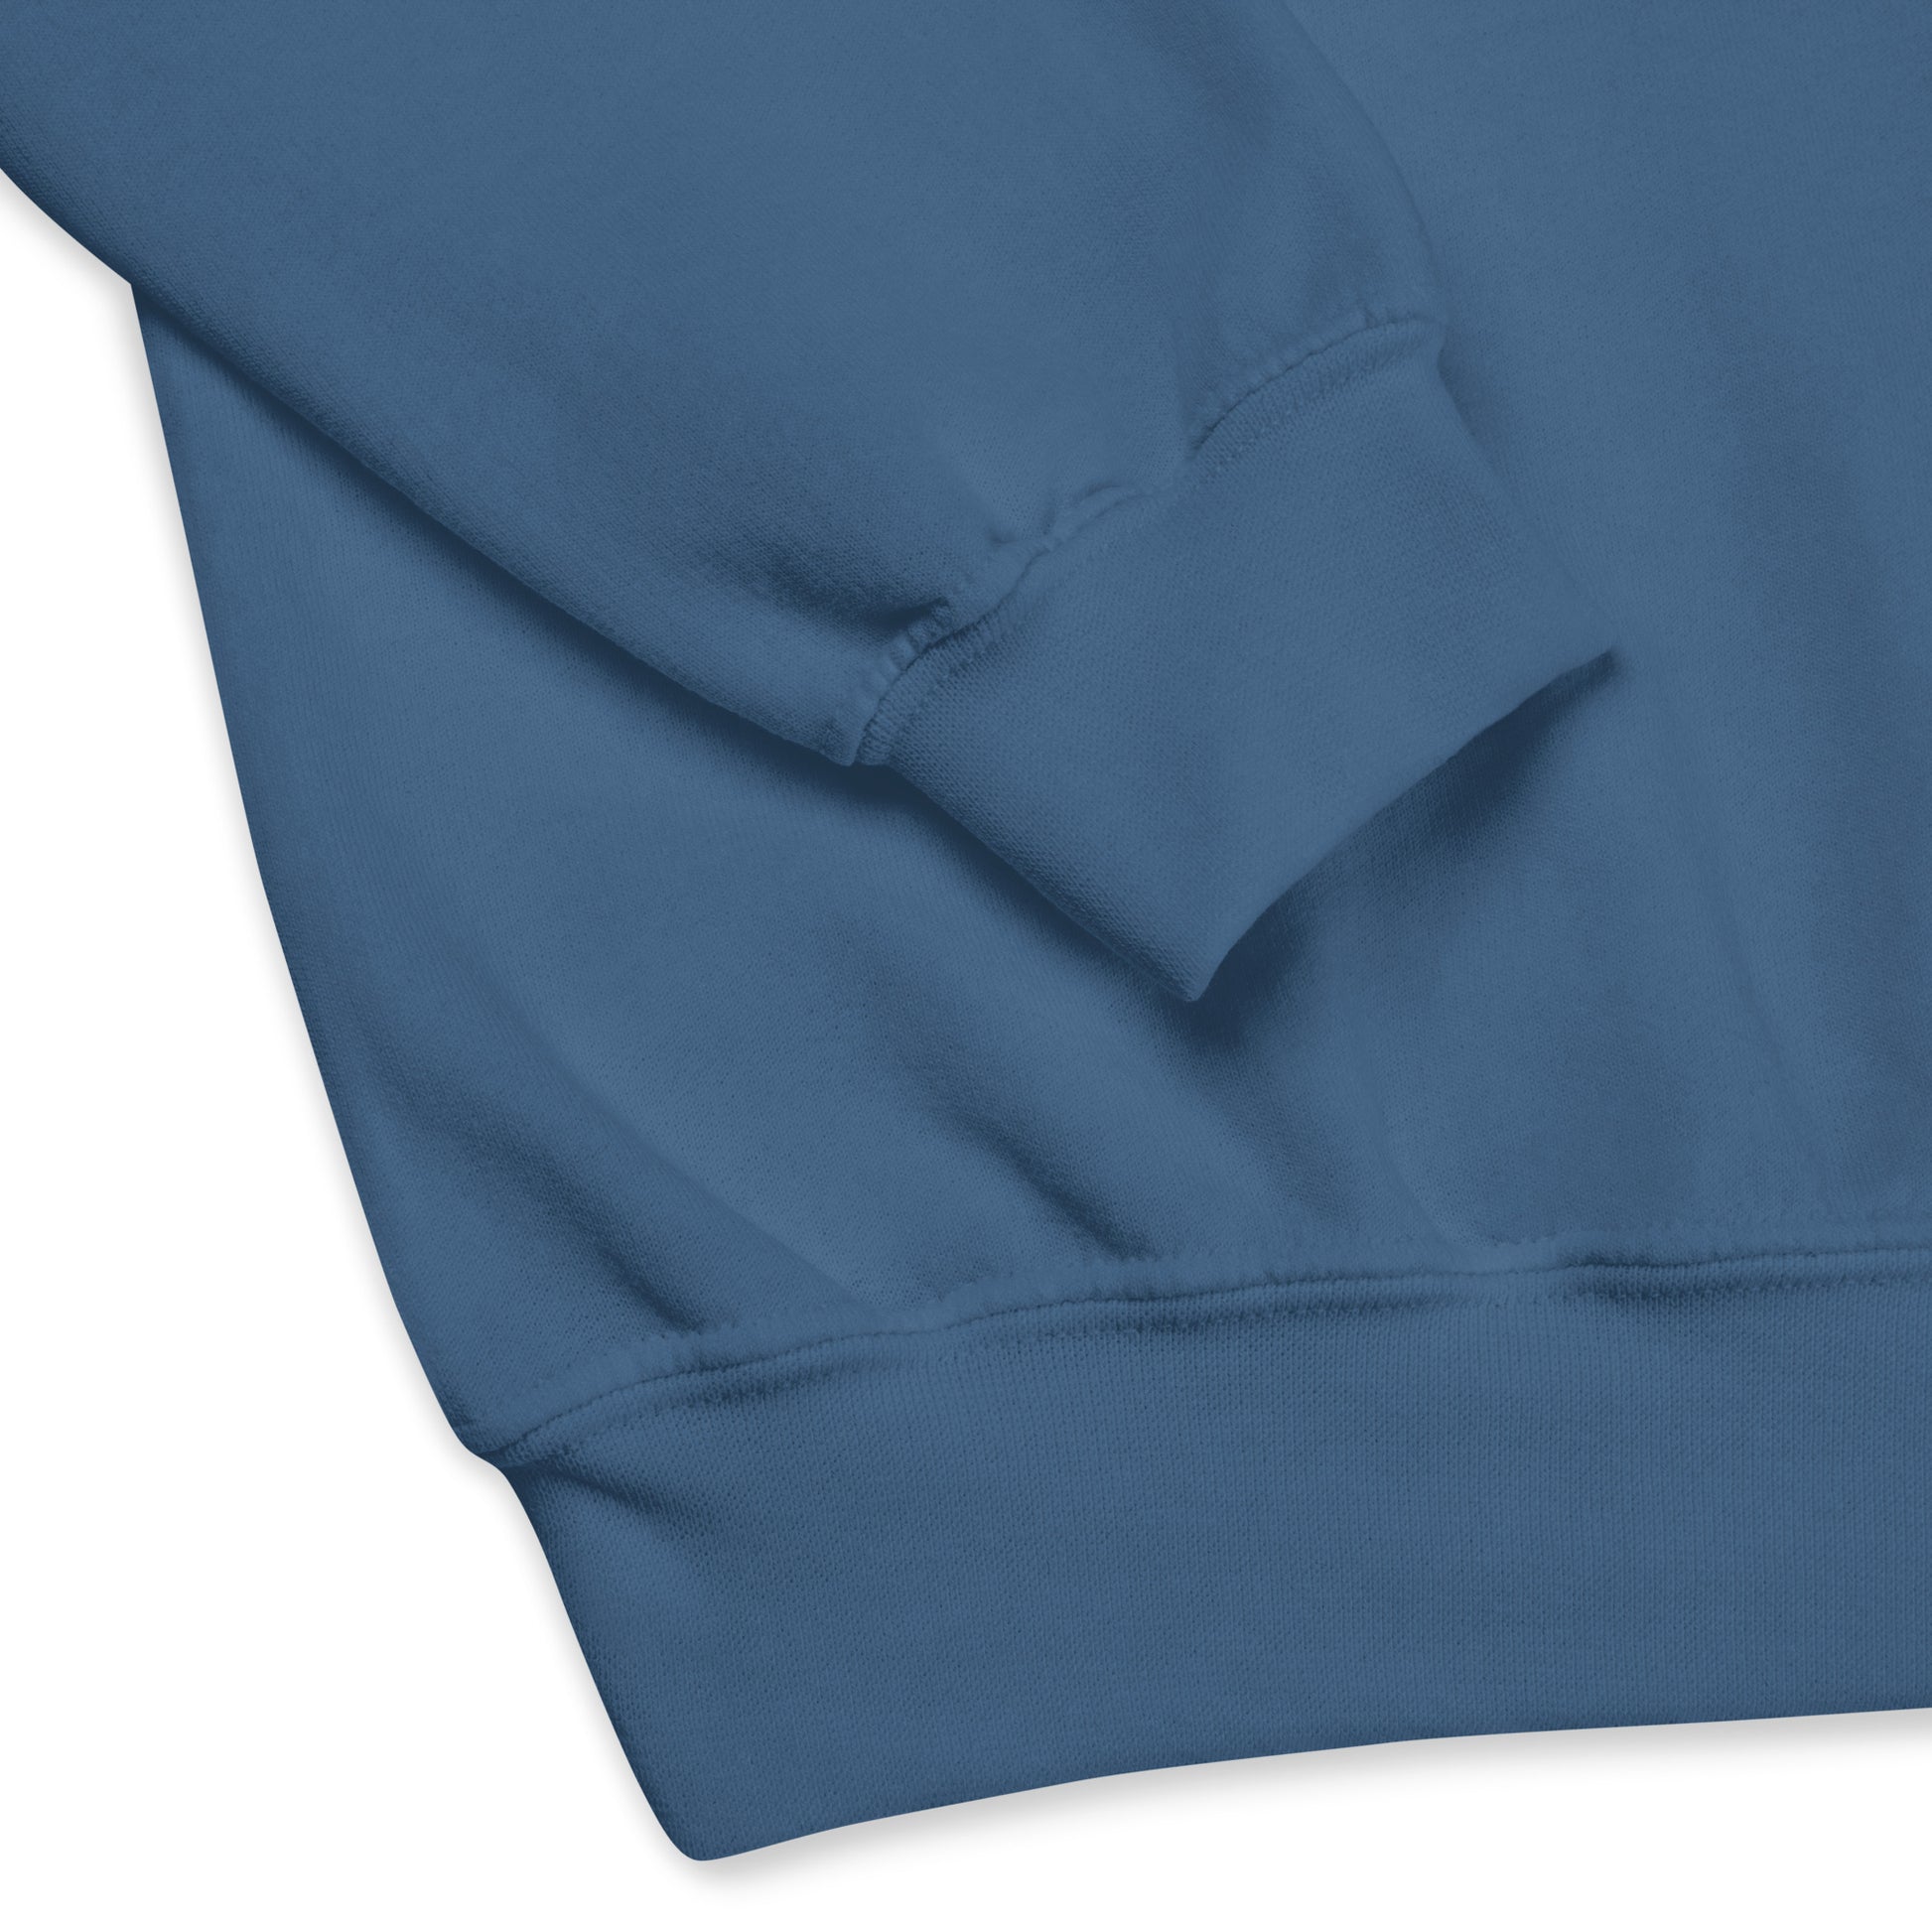 Airport Code Sweatshirt - Navy Blue Graphic • YOW Ottawa • YHM Designs - Image 03